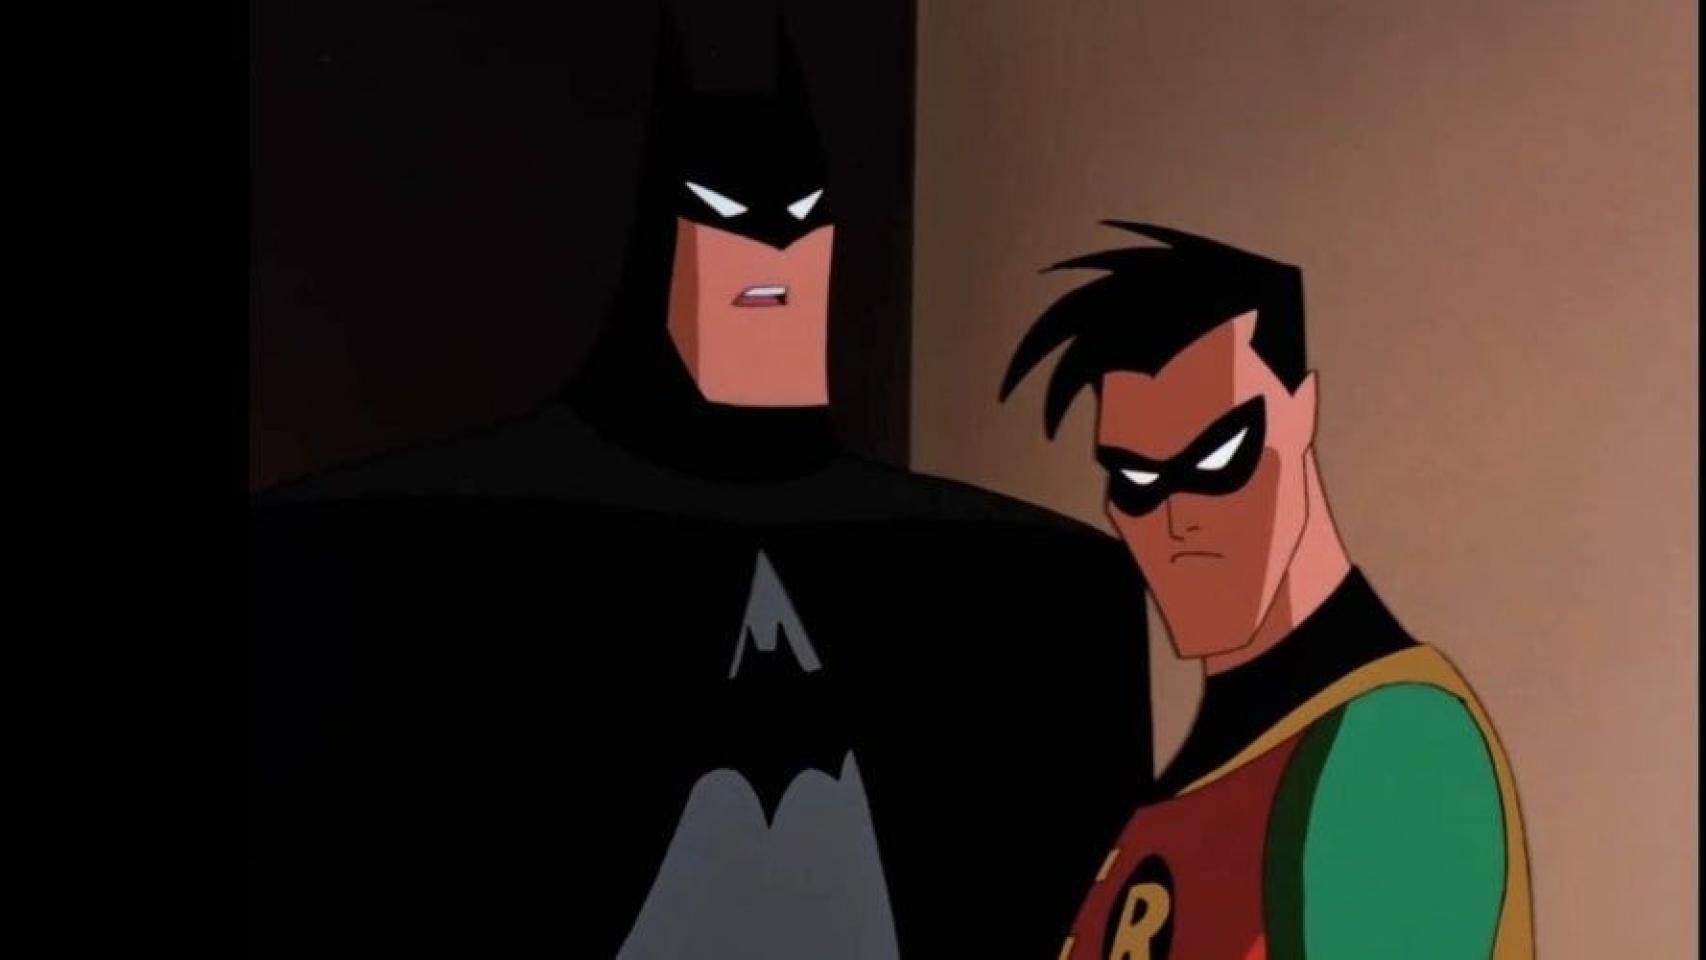 Fallece Kevin Conroy, actor de voz que interpretó a Batman en los juegos  Arkham y en la serie animada